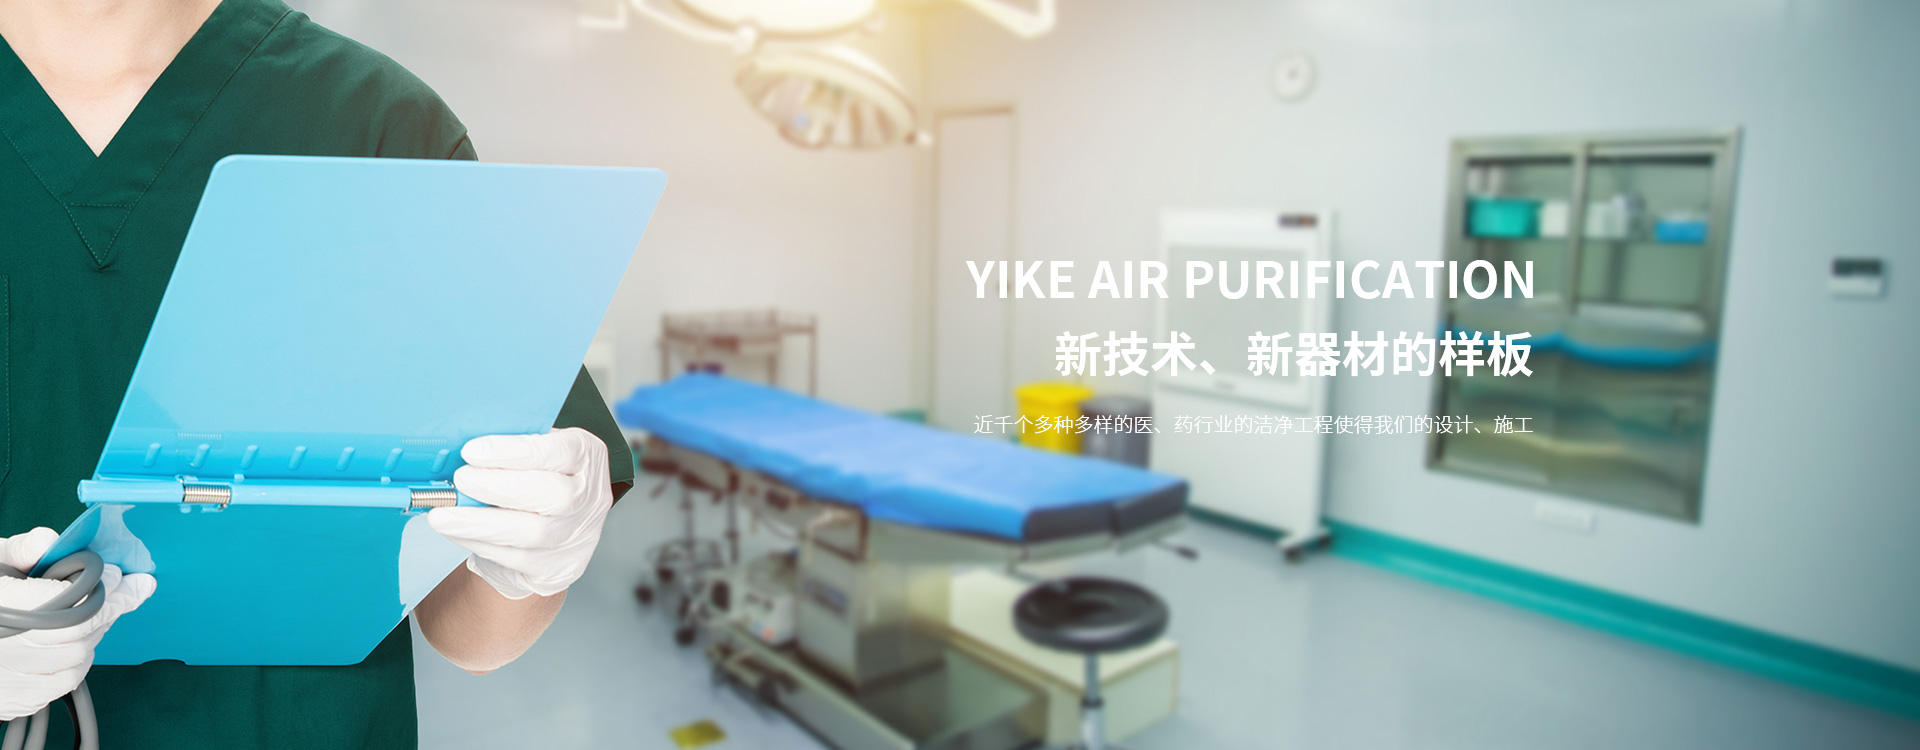 医院净化-净化手术室-层流手术室-净化装修-净化车间-杭州依科空气净化科技有限公司